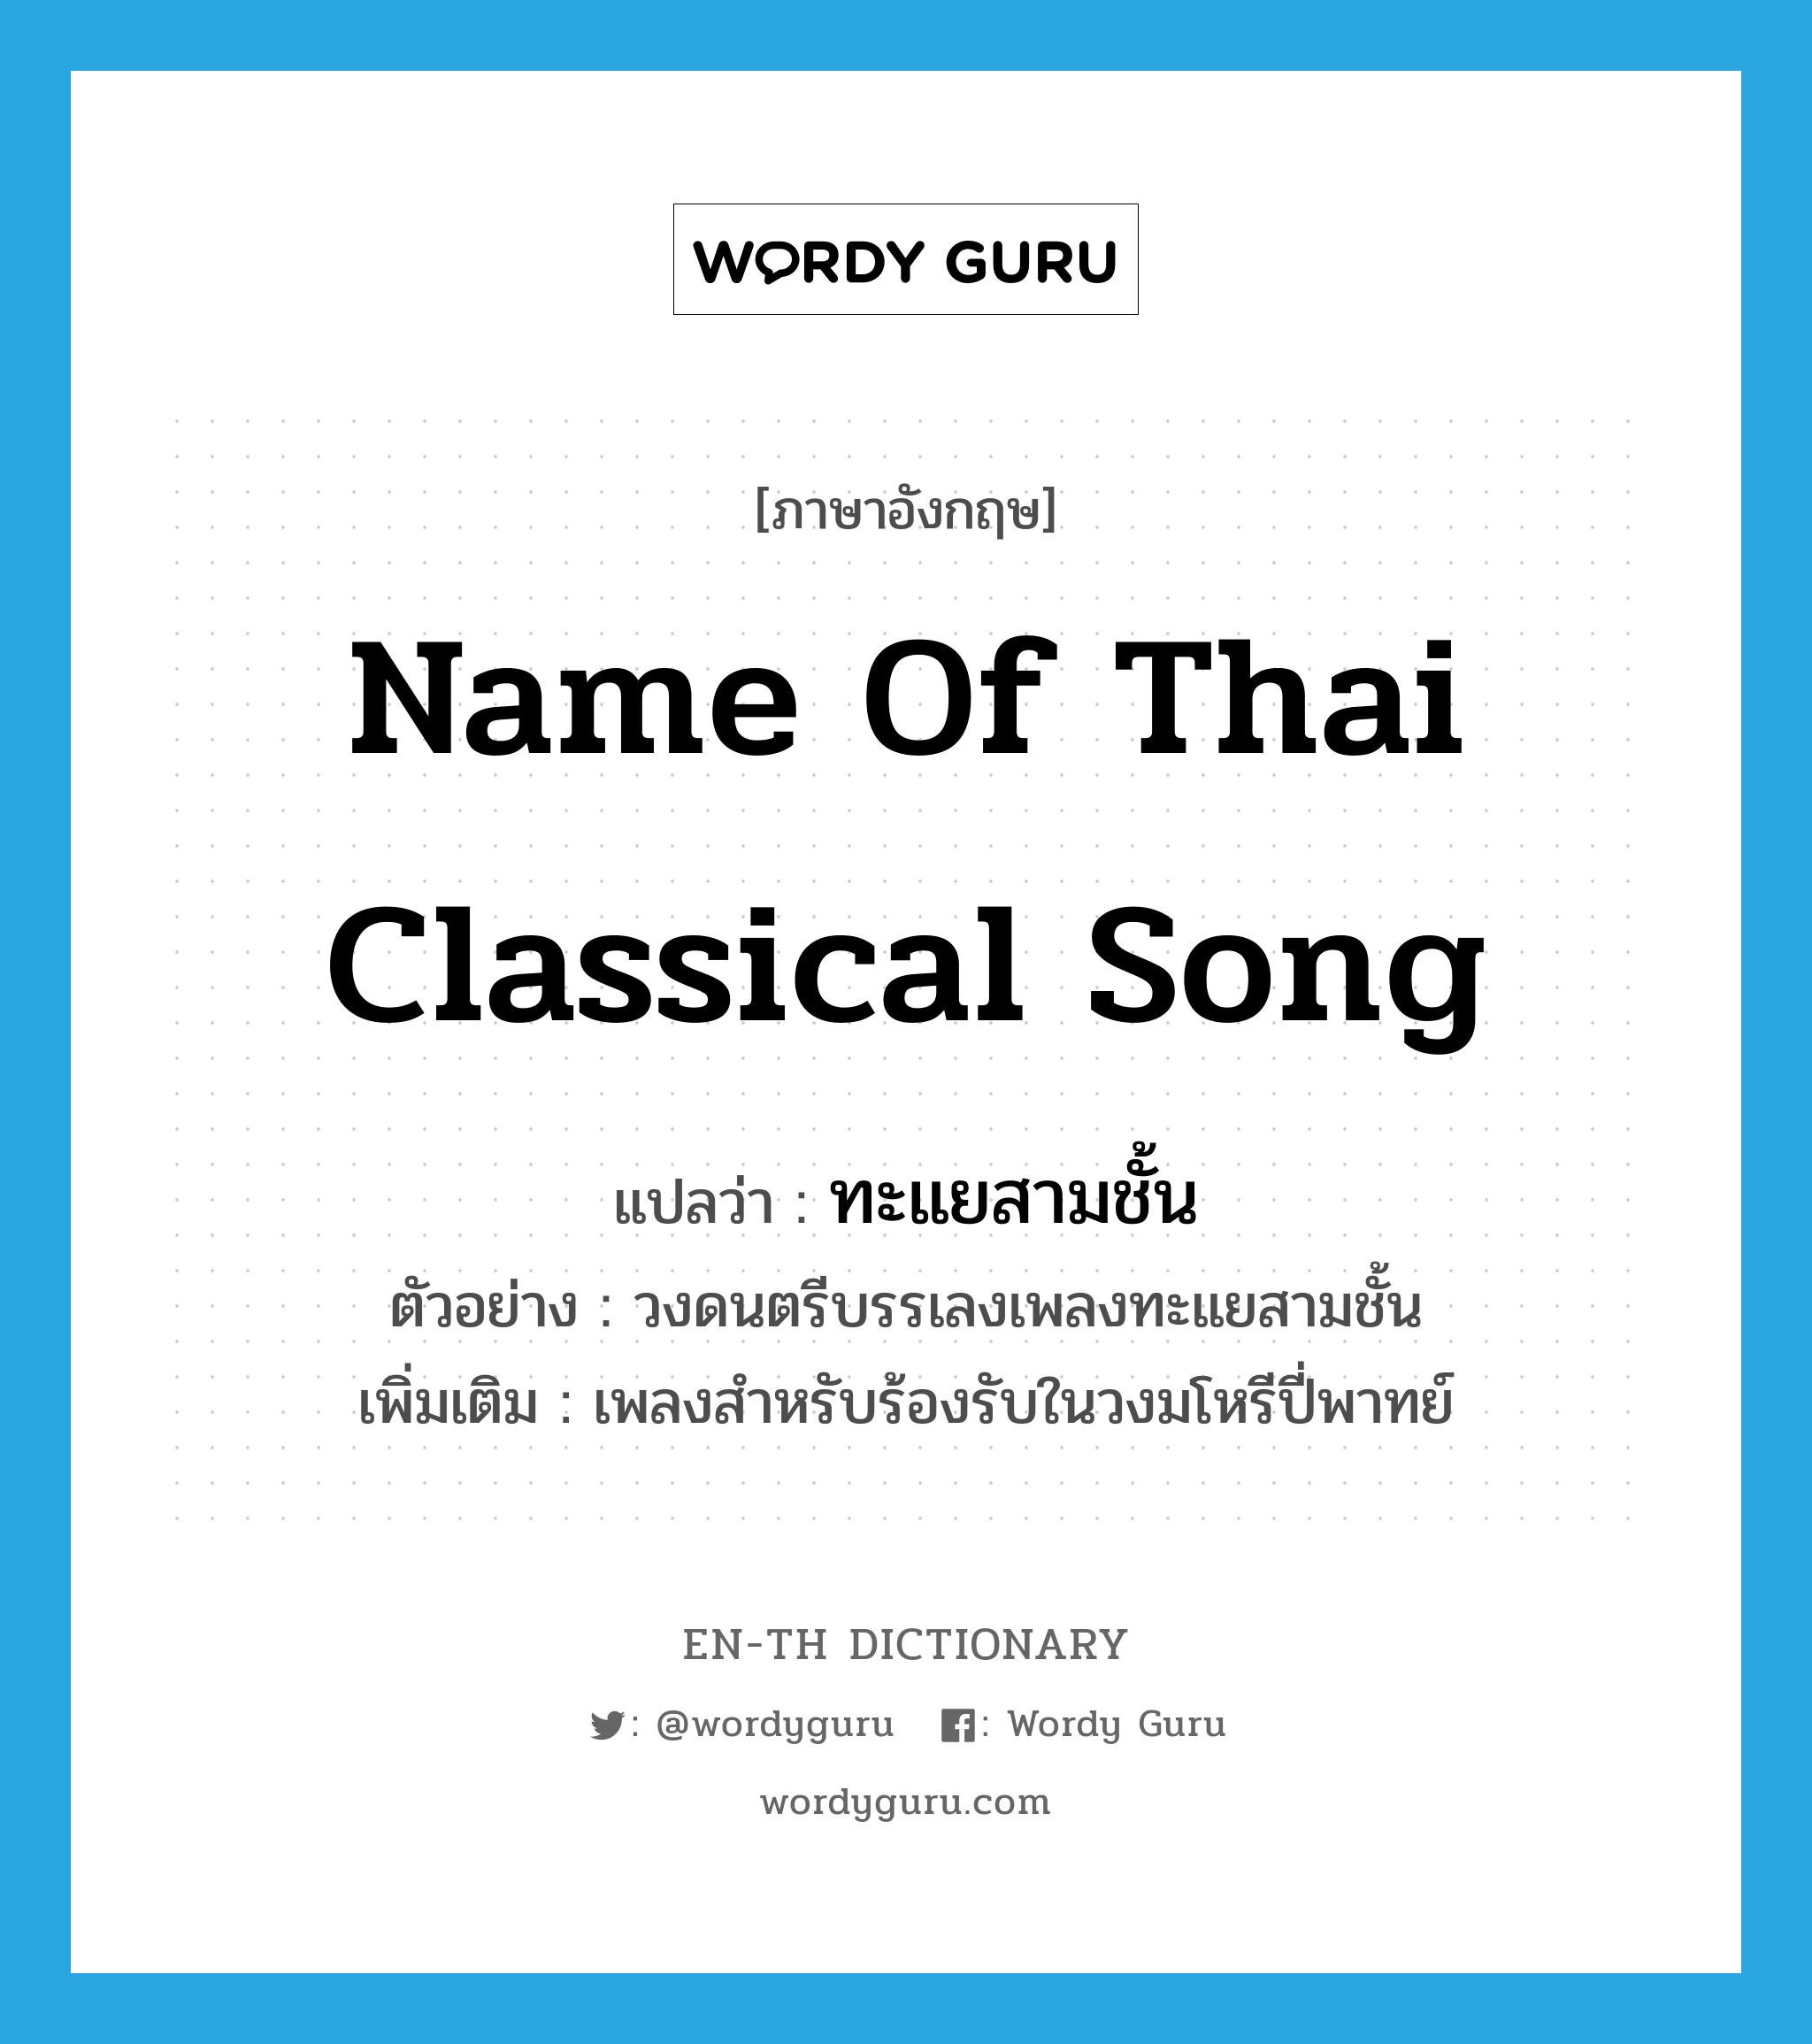 name of Thai classical song แปลว่า?, คำศัพท์ภาษาอังกฤษ name of Thai classical song แปลว่า ทะแยสามชั้น ประเภท N ตัวอย่าง วงดนตรีบรรเลงเพลงทะแยสามชั้น เพิ่มเติม เพลงสำหรับร้องรับในวงมโหรีปี่พาทย์ หมวด N